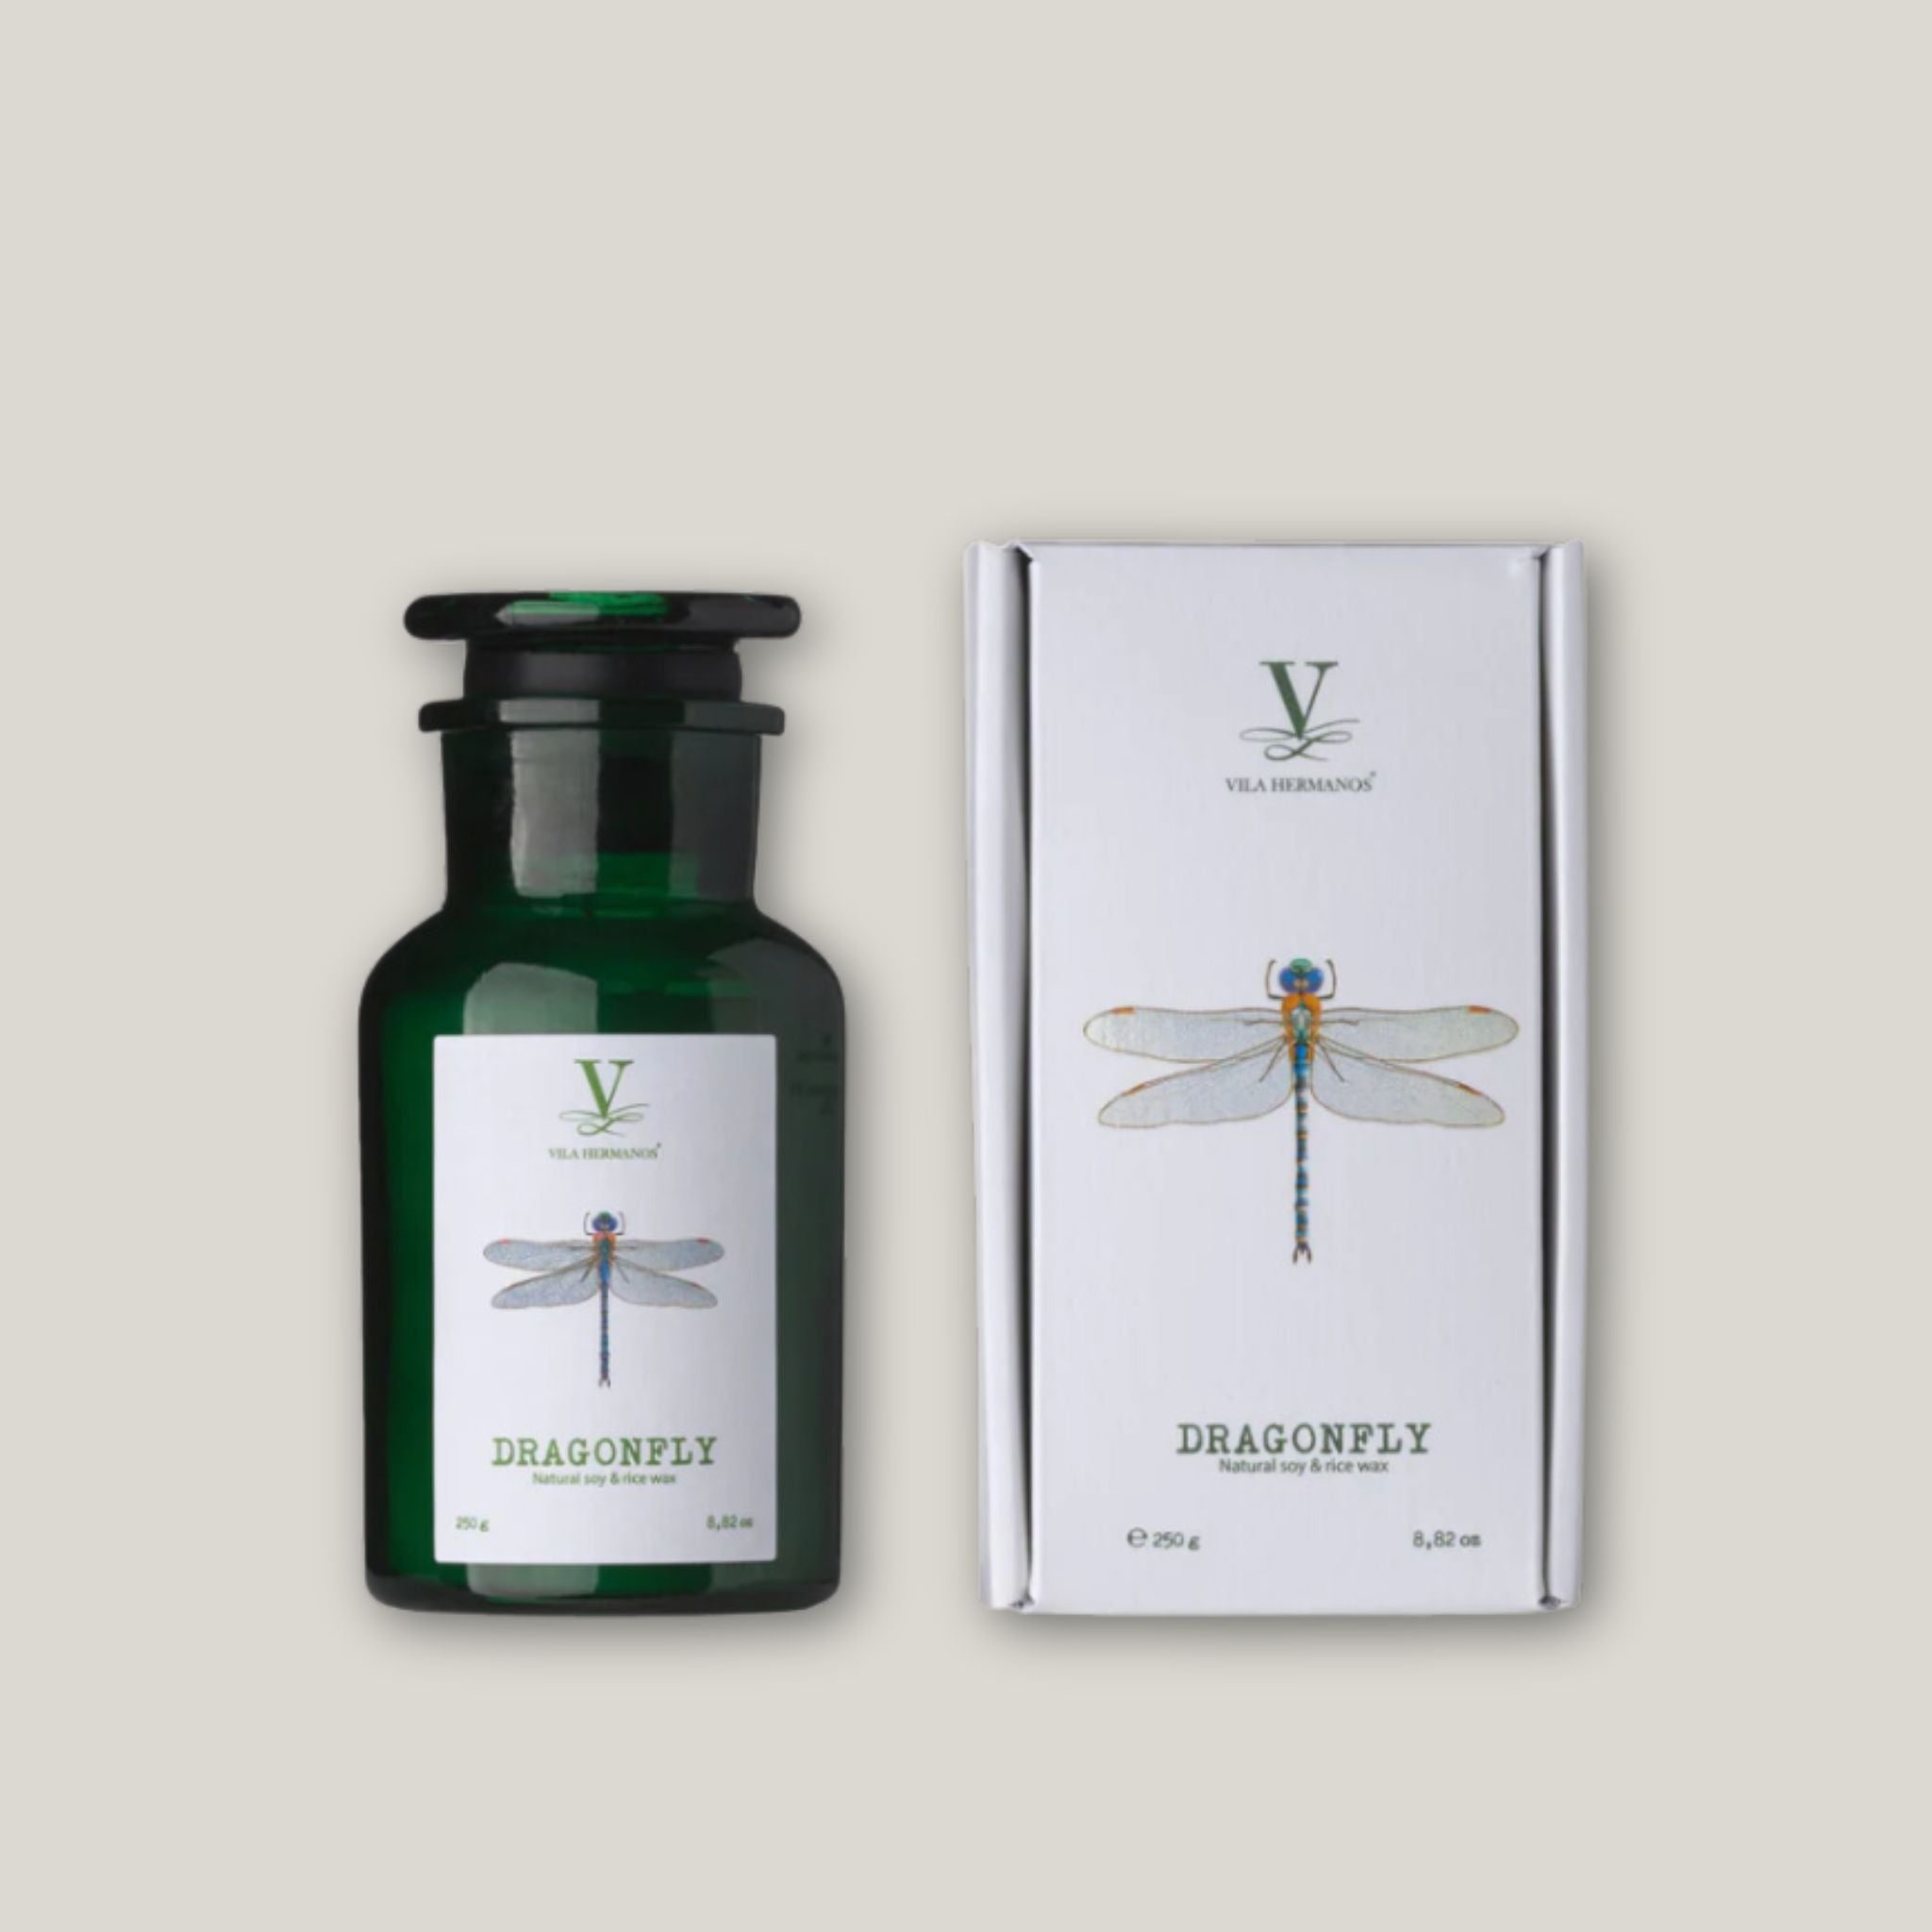 Talisman Dragonfly - Green Candle Jar 8.8 oz